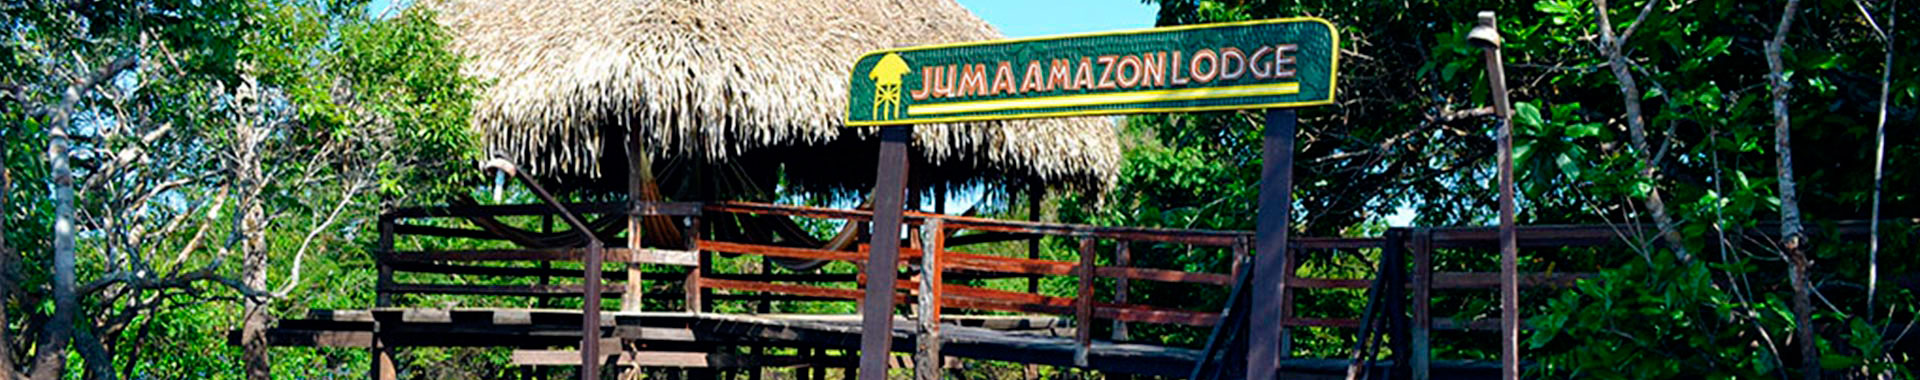 Brasil - Amazonia - Hoteles - Juma